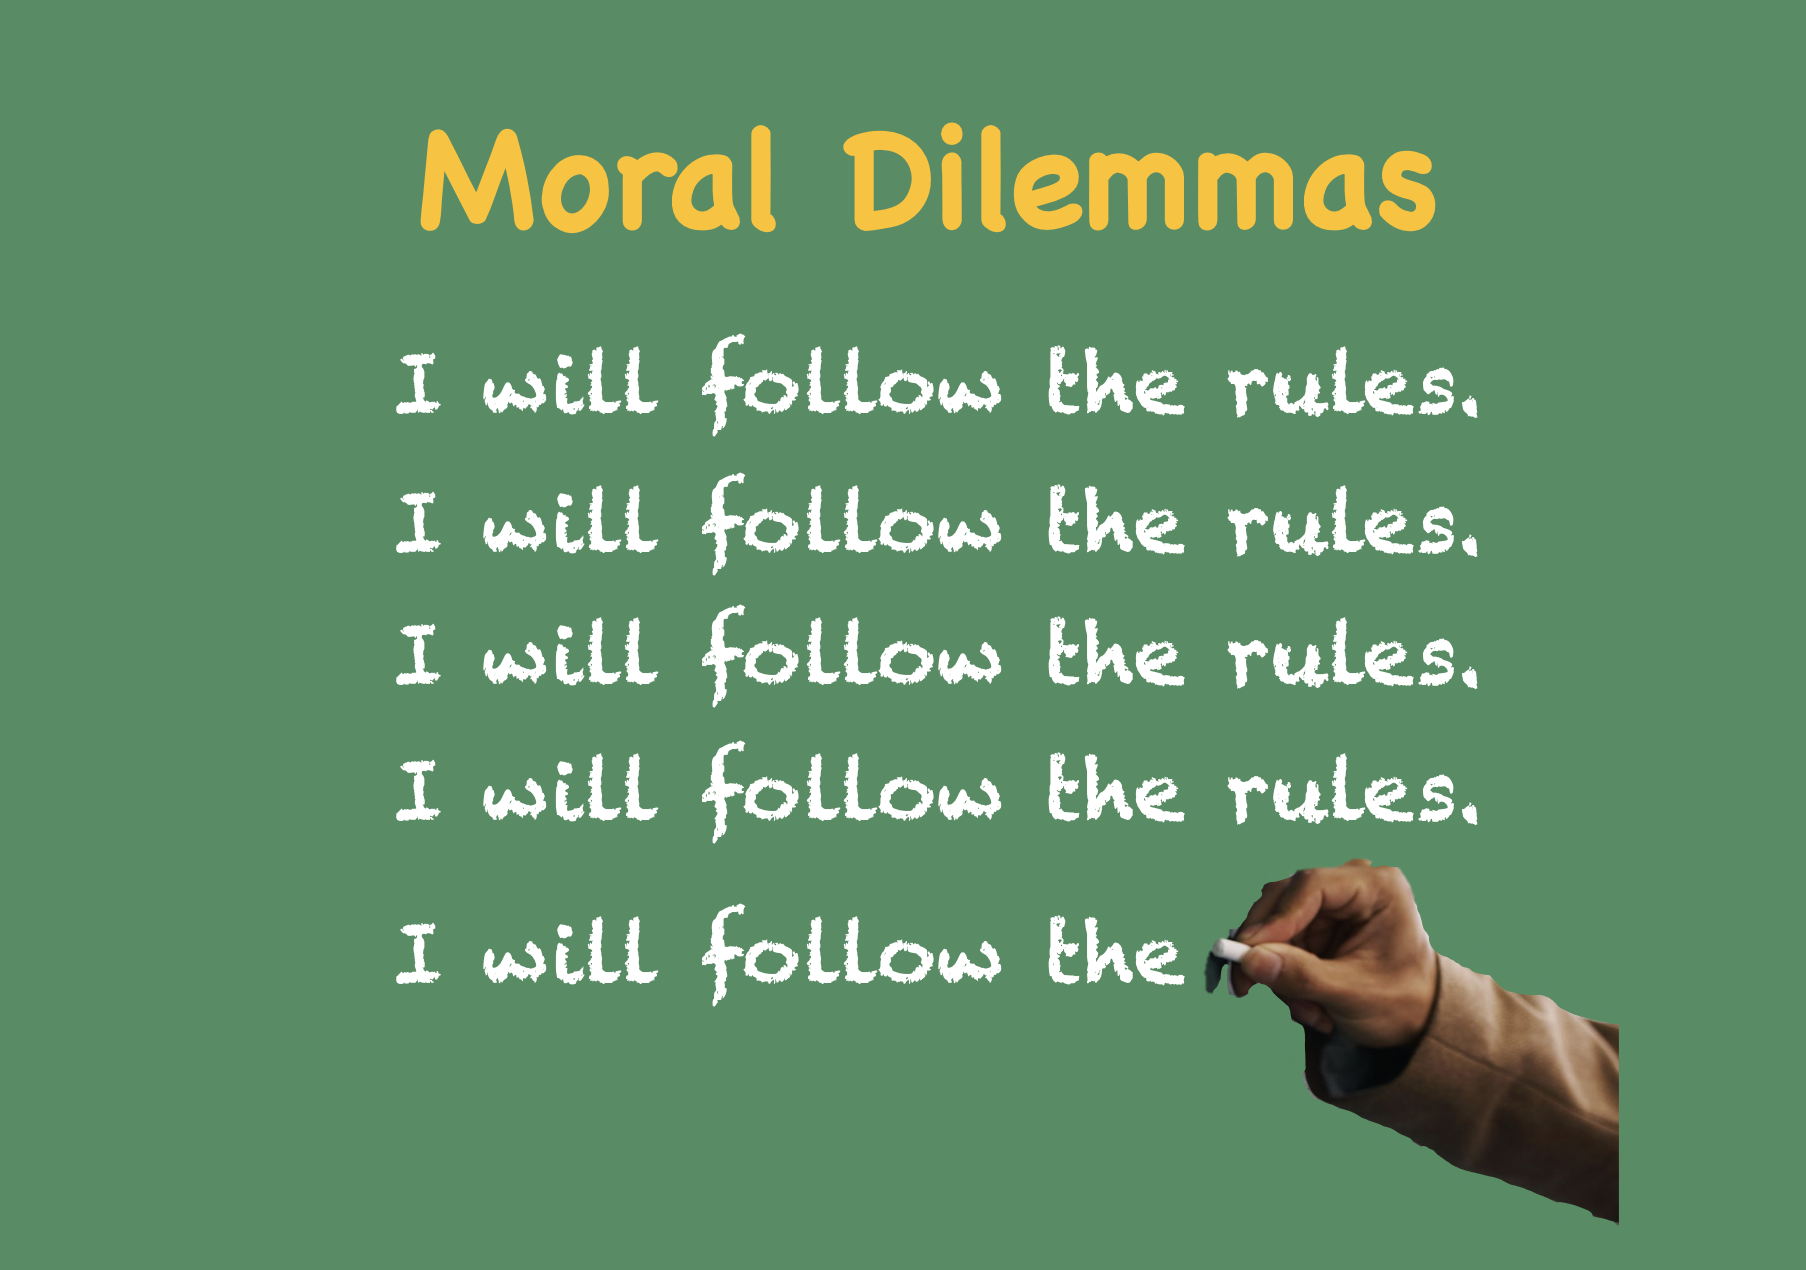 Moral Dilemma (Copy) (Copy)